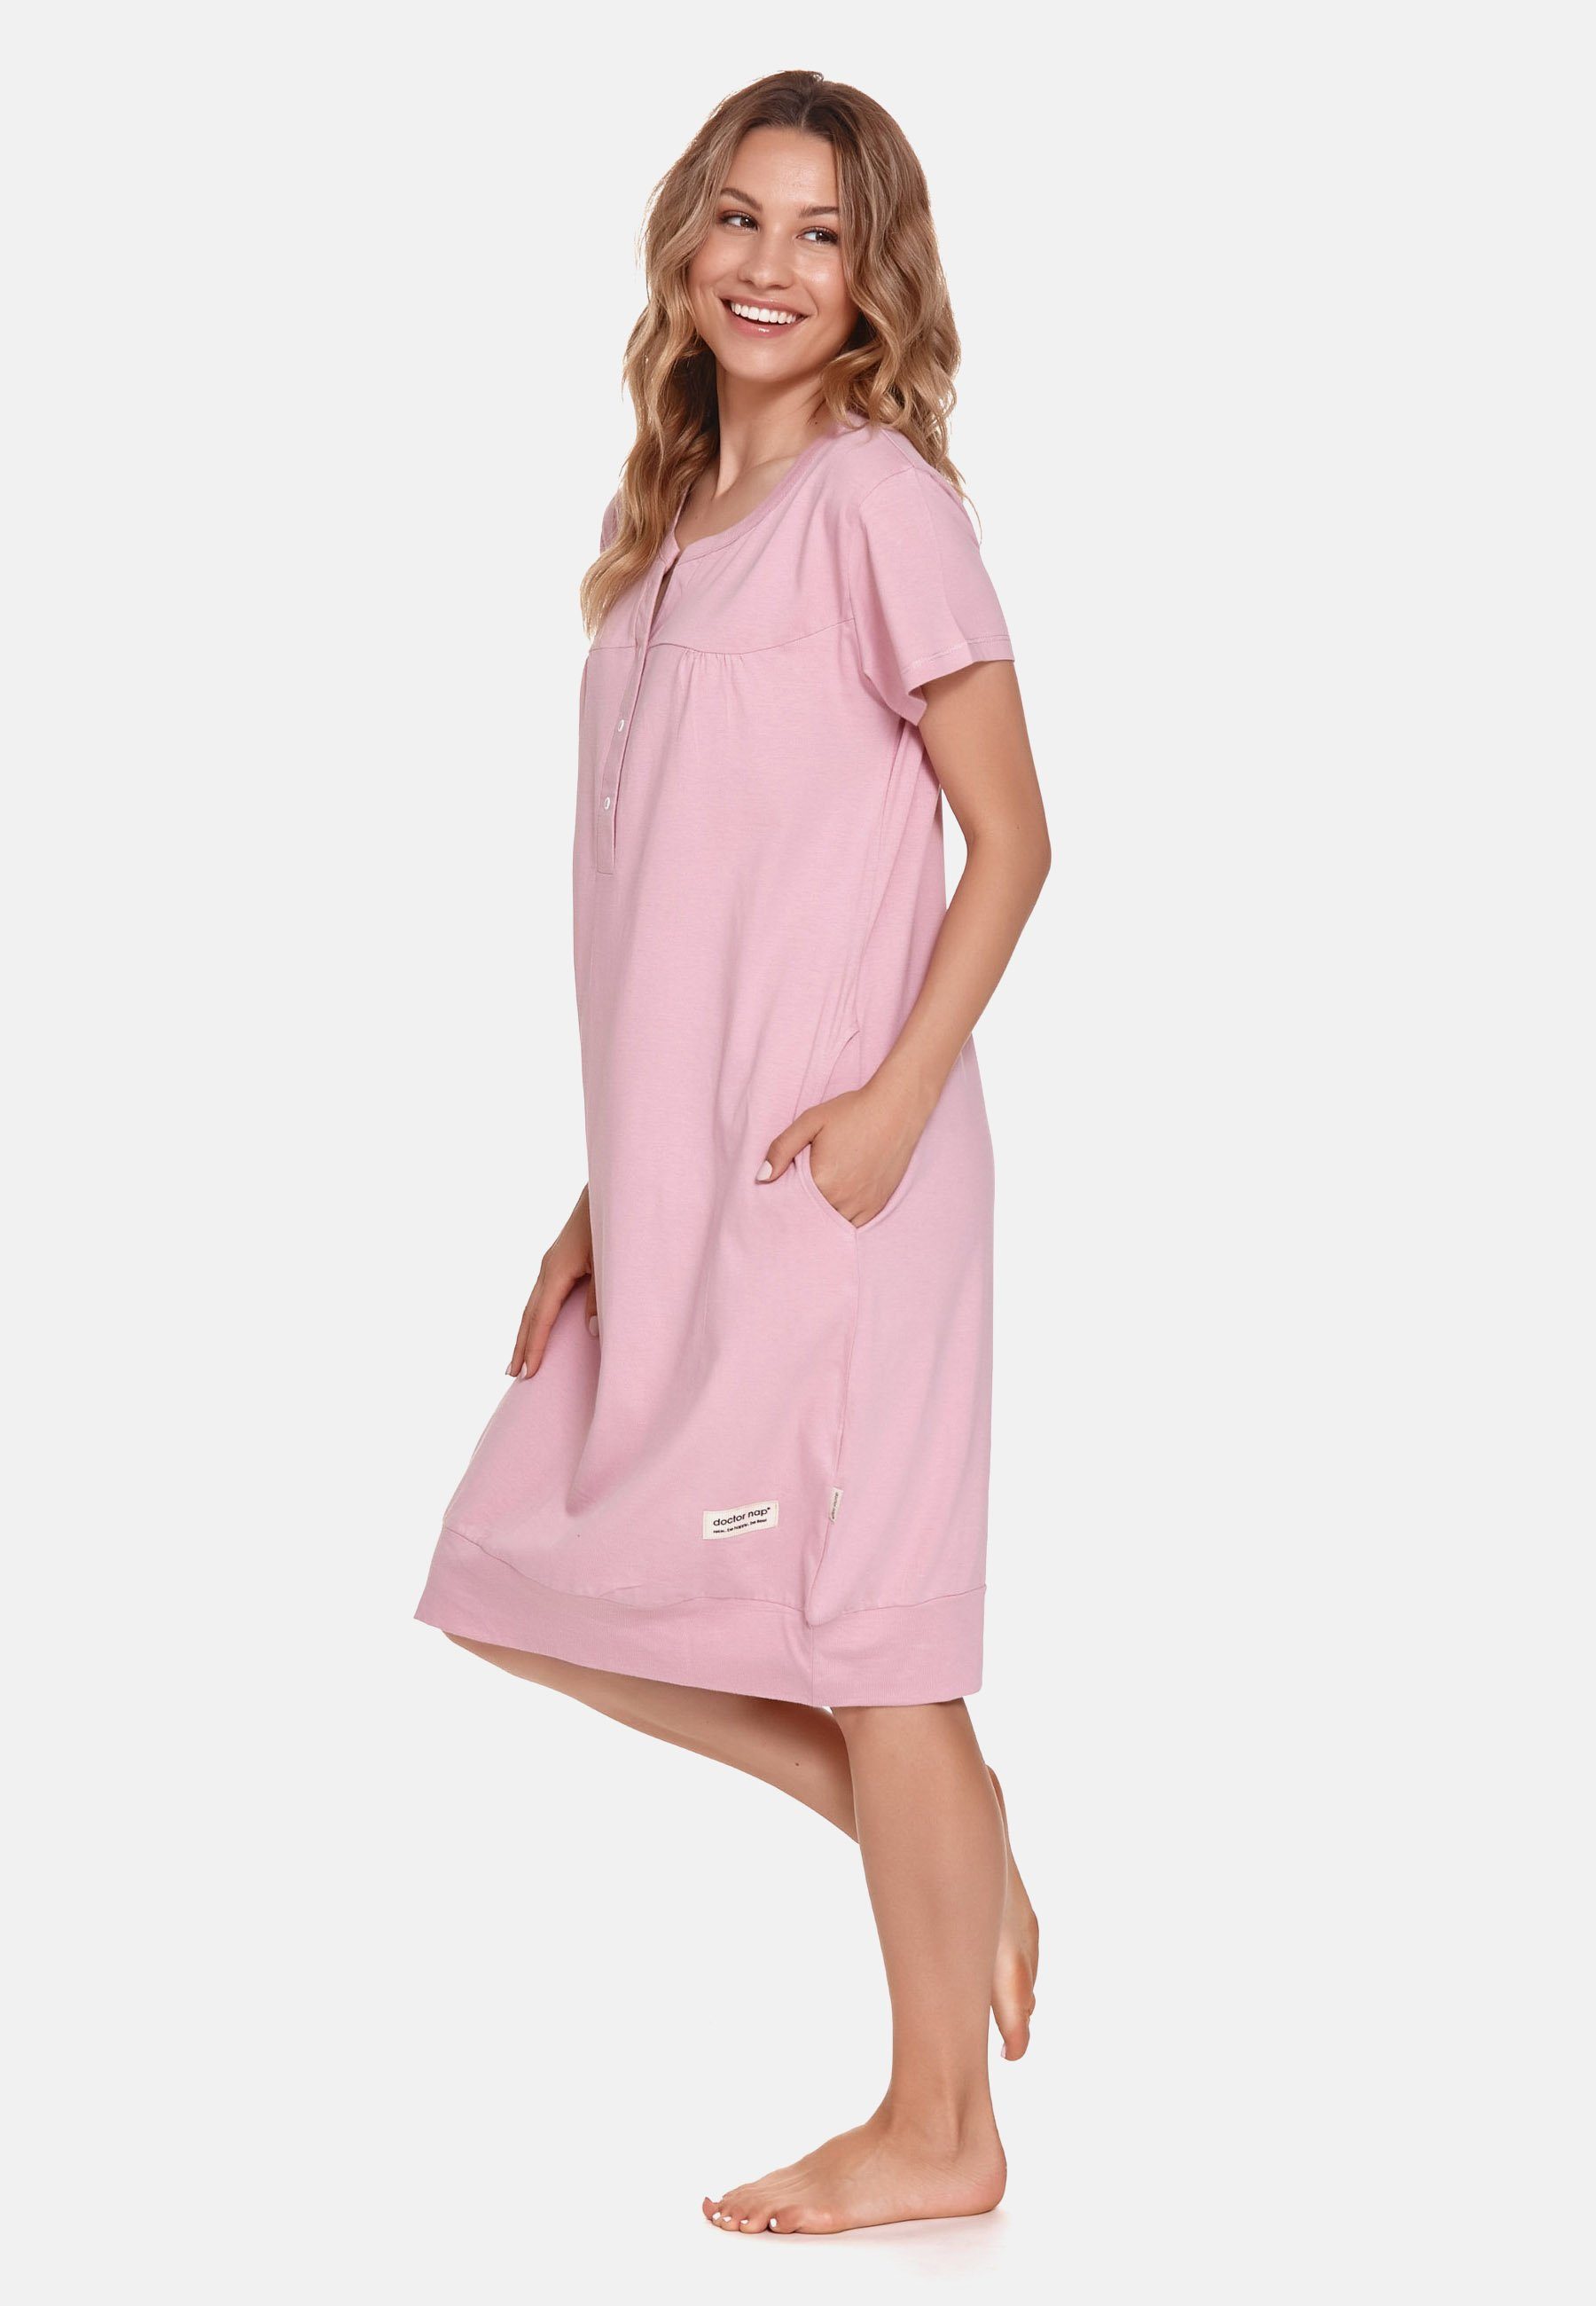 Rosa Schlafhemd Frauen für aus Nachthemd Bio-Baumwolle nap doctor